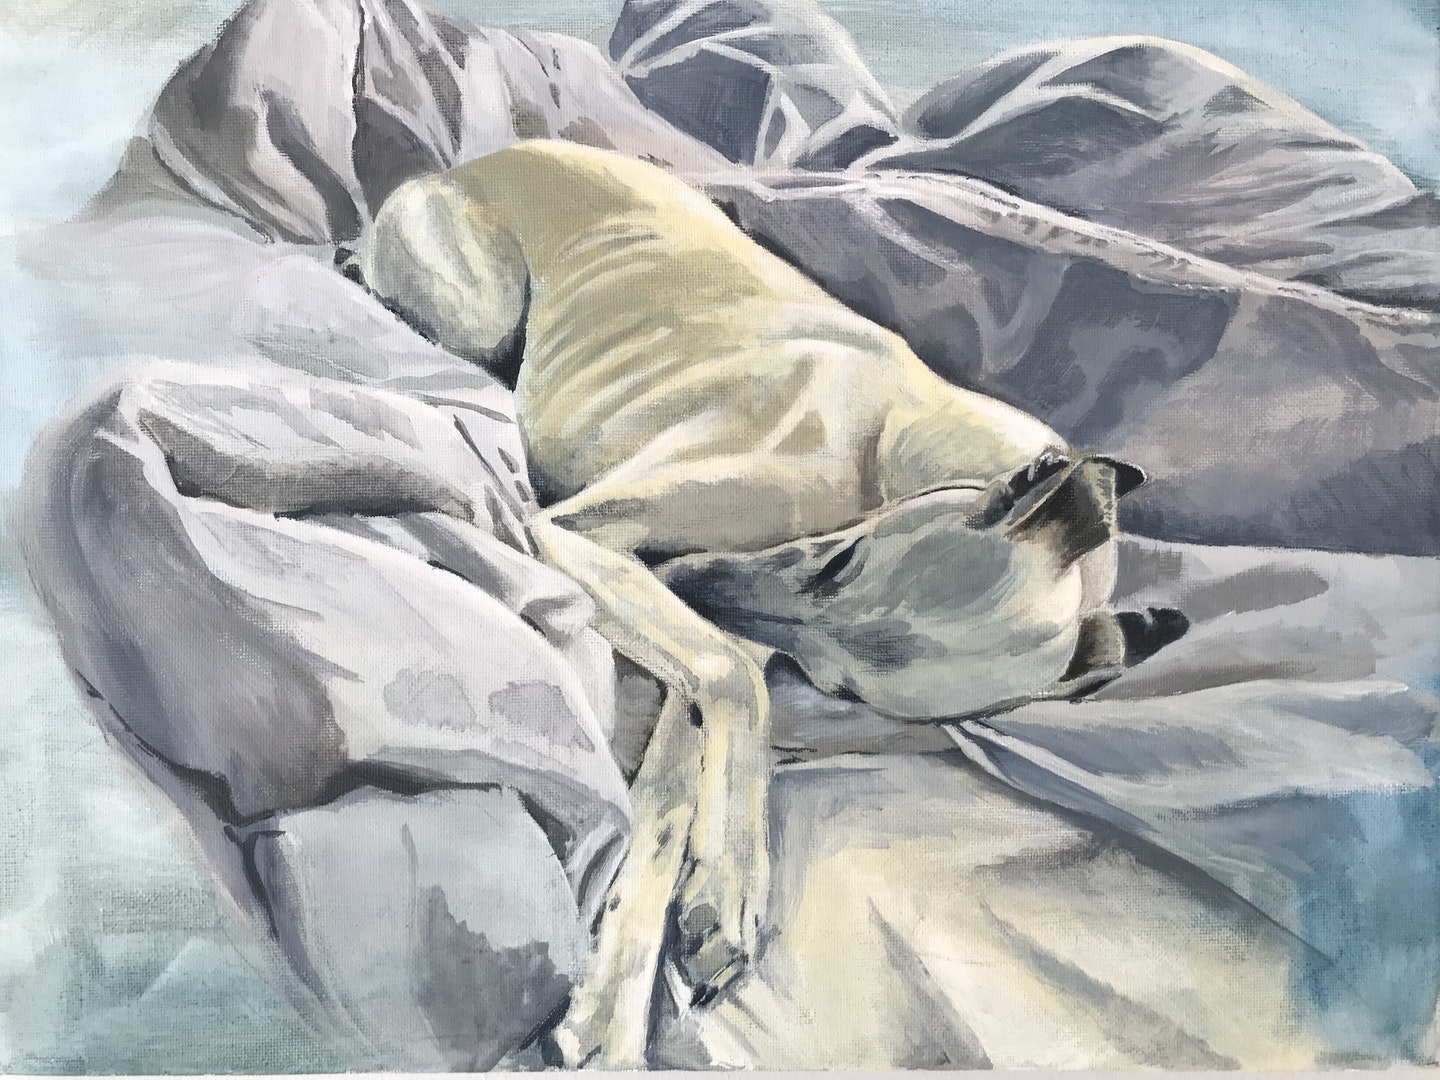 'Dog on Duvet', Claire Gurnett, acrylic on canvas, 40 x 30 cm